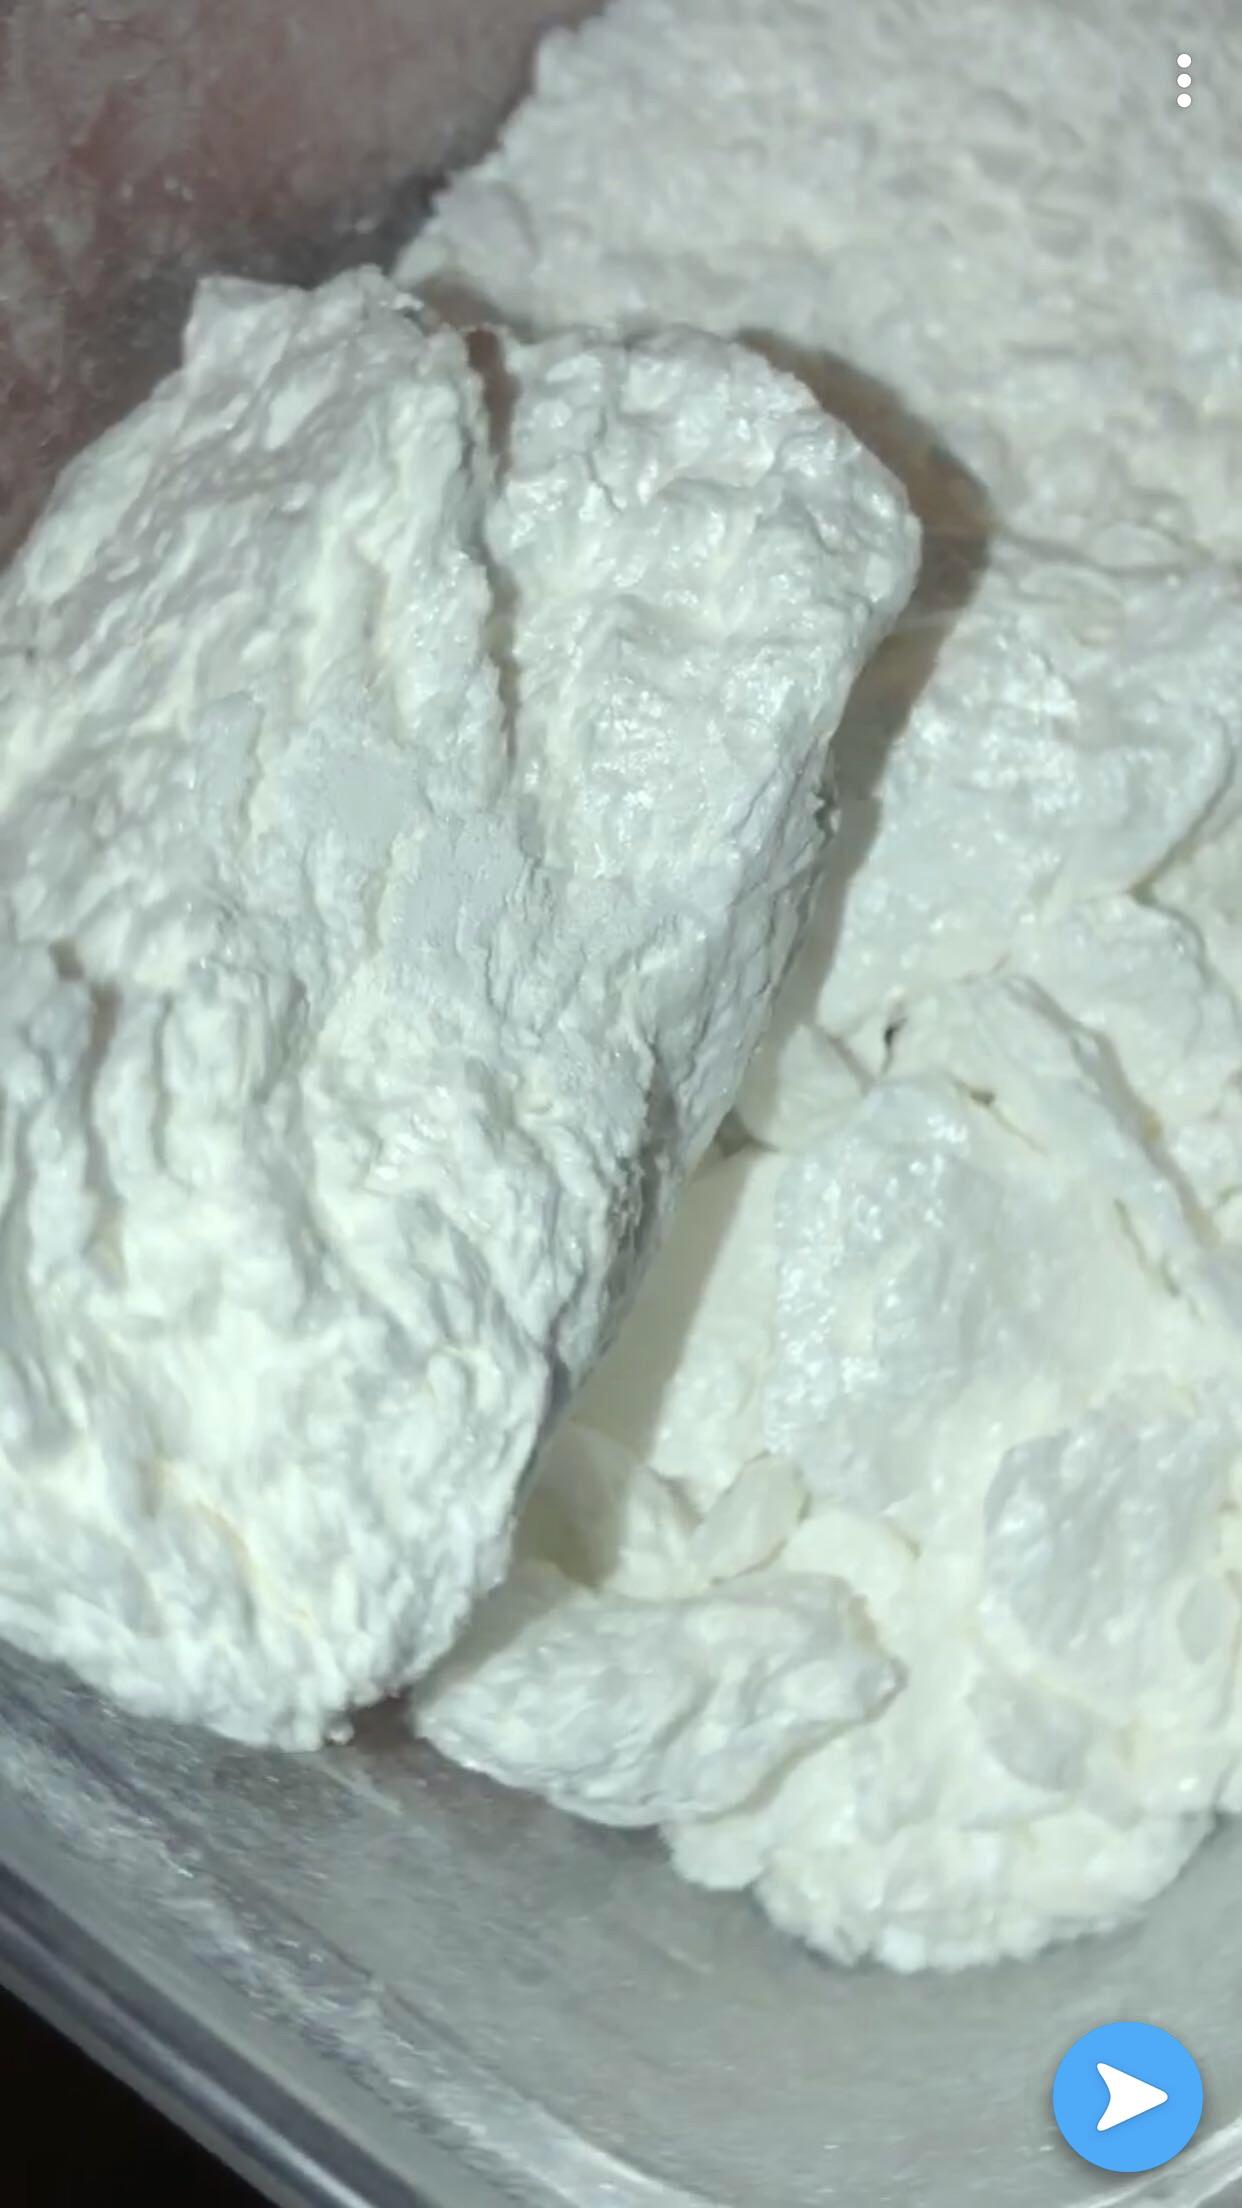 Buy Bolivian Cocaine In Bulk